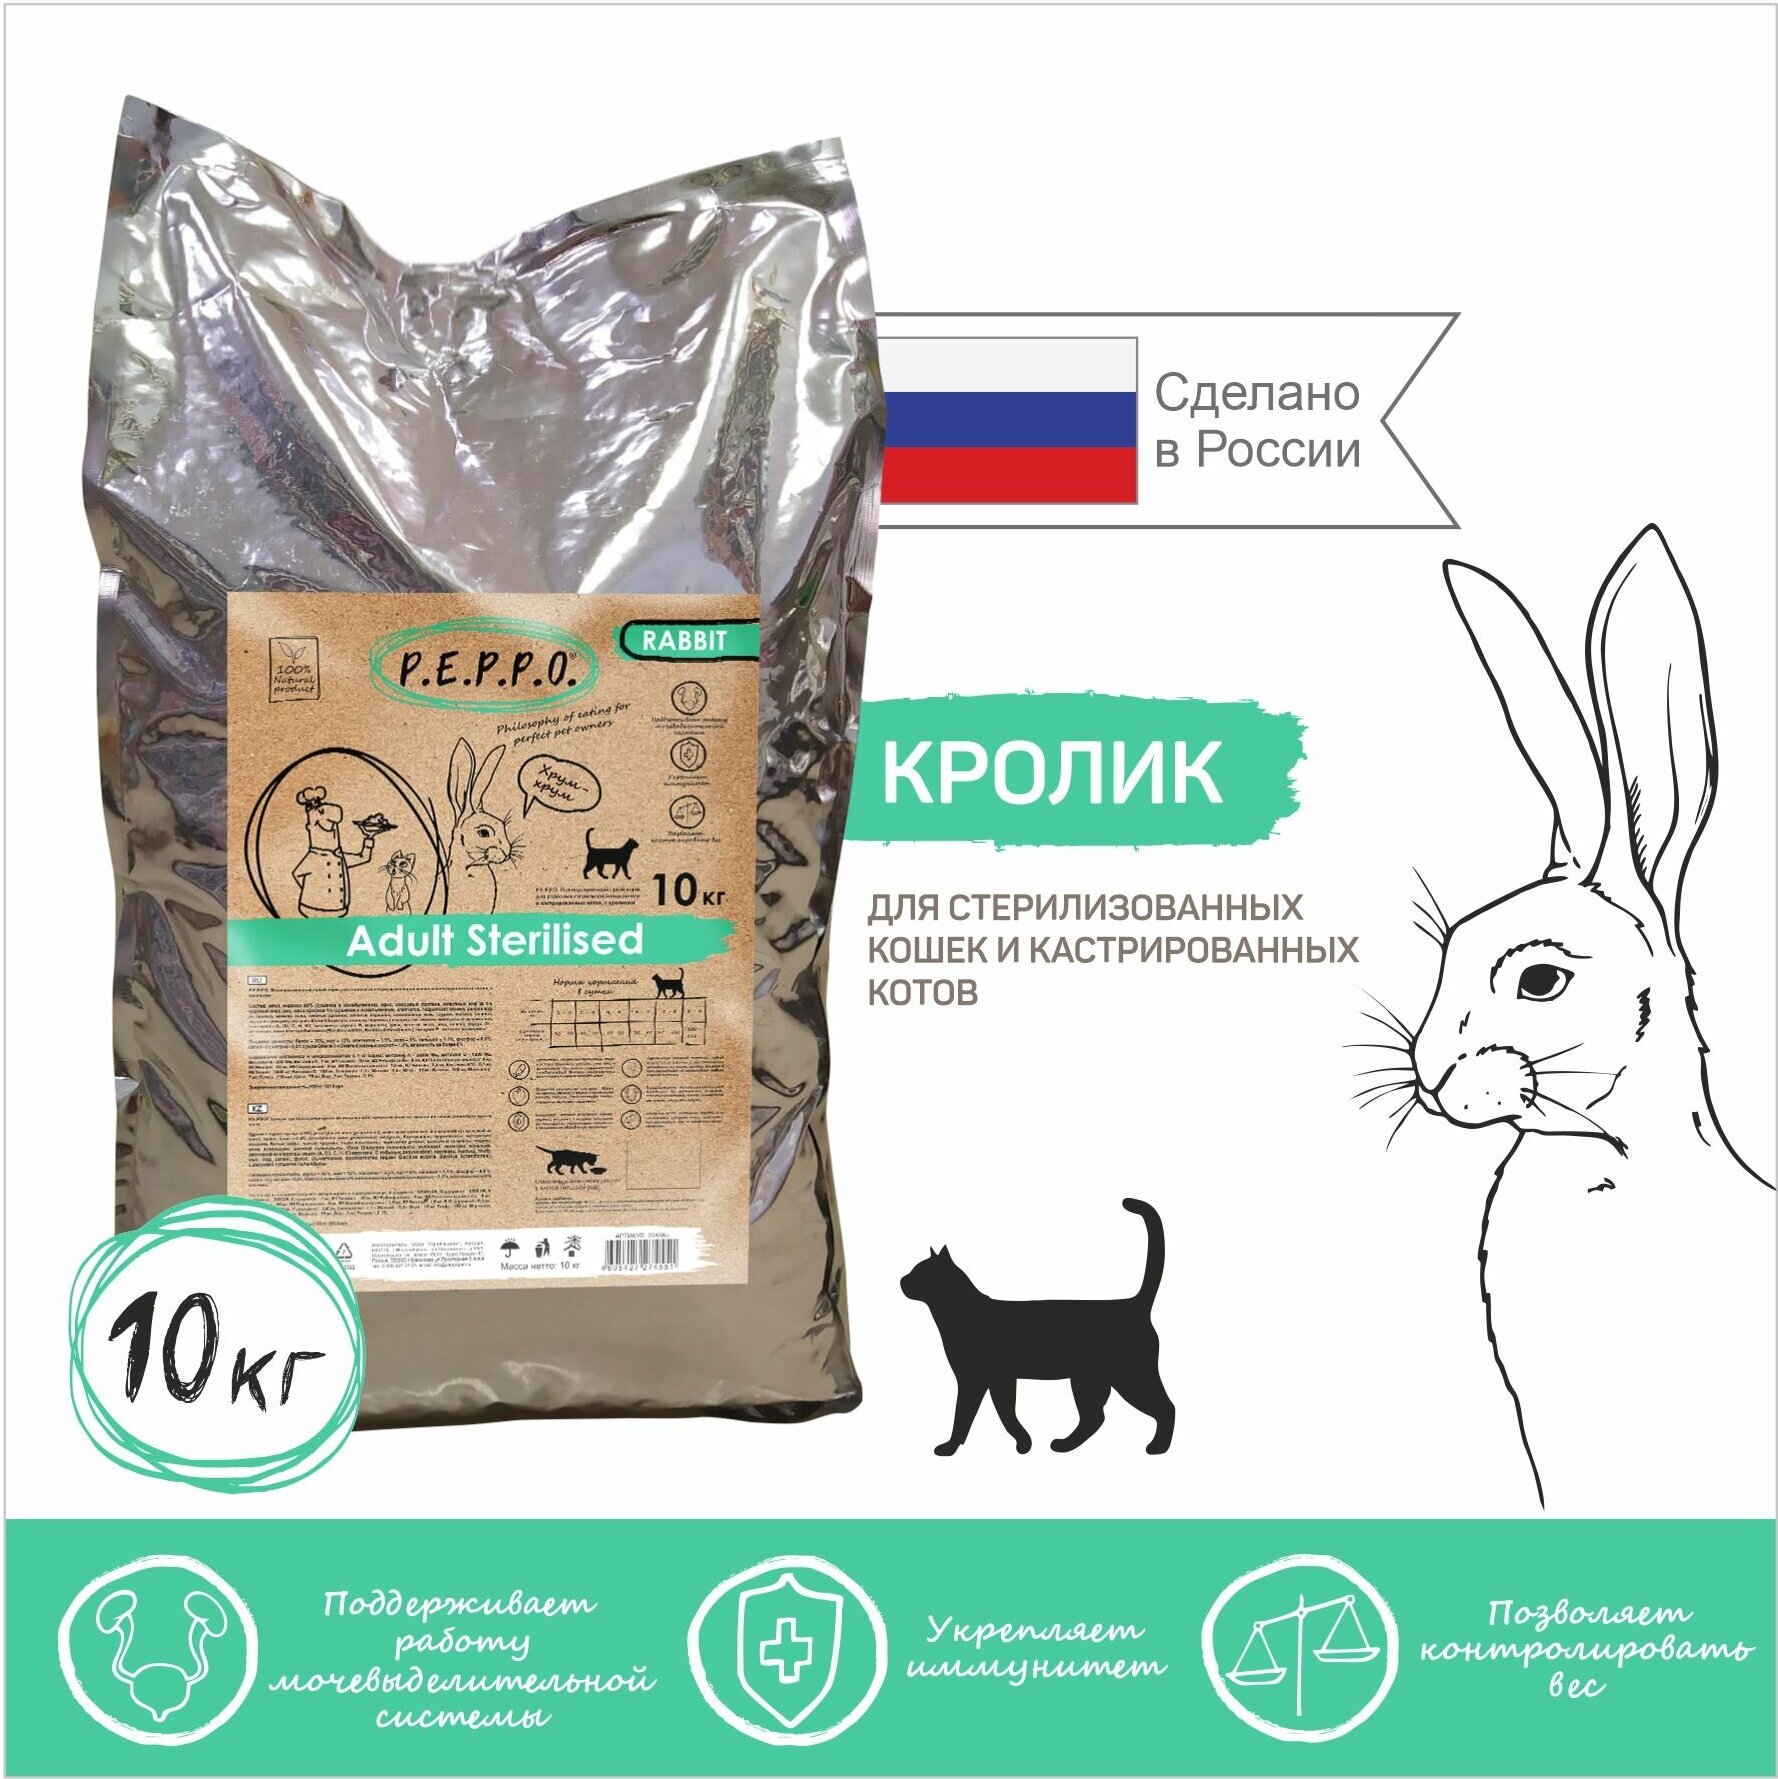 Сухой корм PEPPO для стерилизованных и кастрированных кошек Кролик 10кг